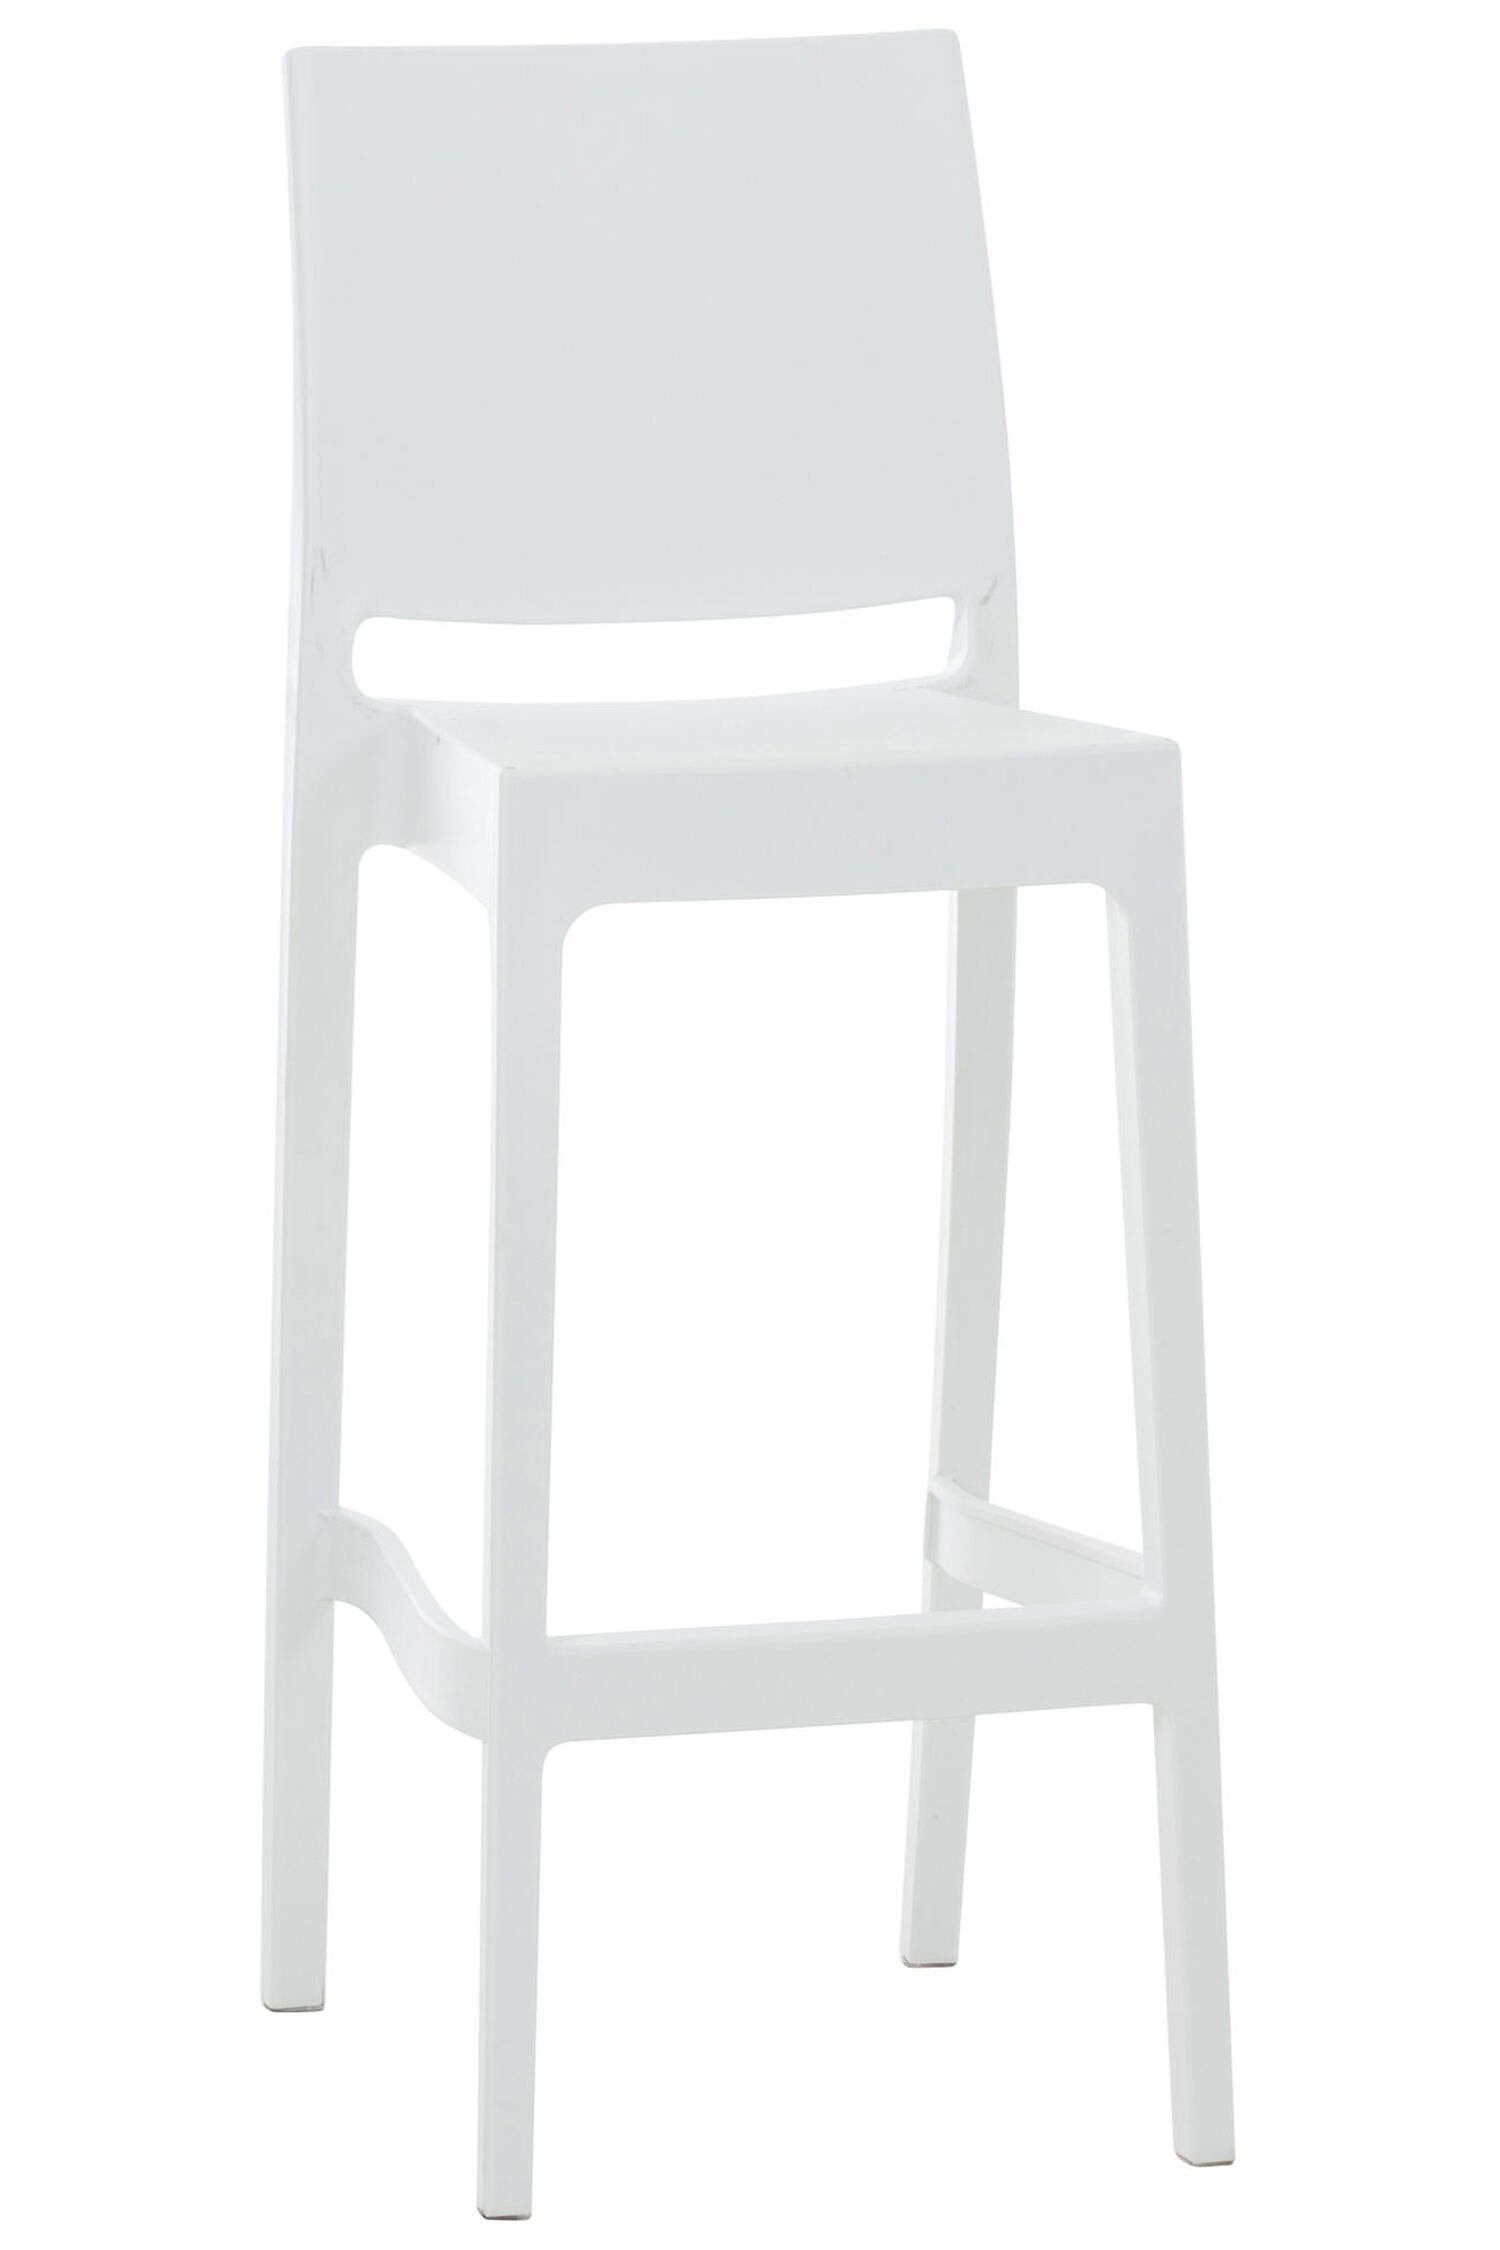 TPFLiving Barhocker Maya (mit angenehmer Fußstütze - Hocker für Theke & Küche), Gestell Kunststoff - Sitzfläche: Kunststoff Weiß